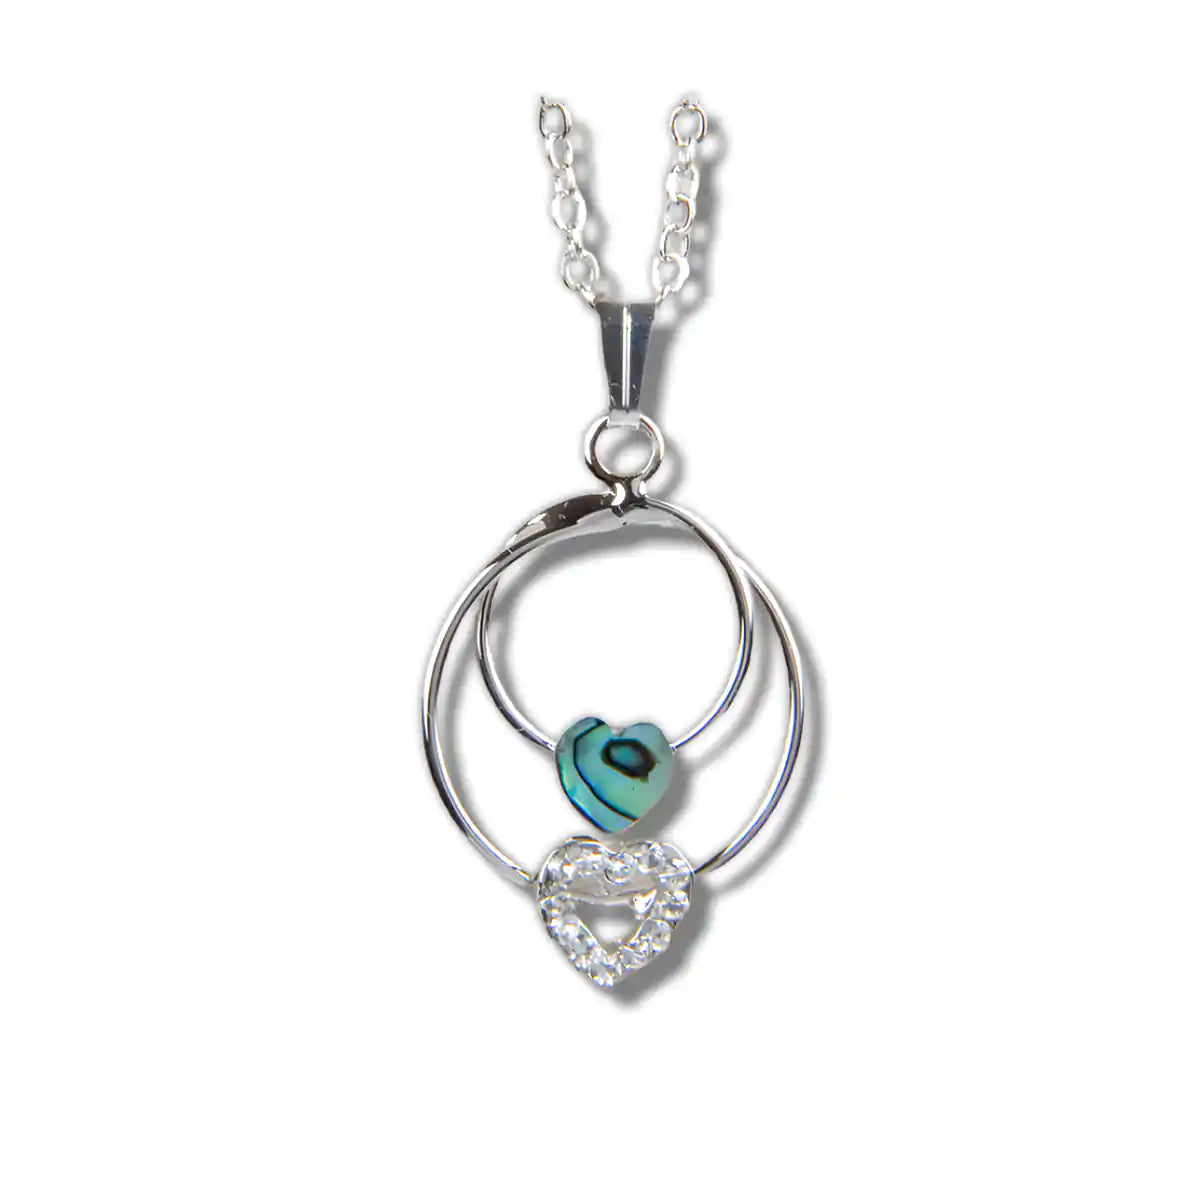 Glacier pearle true love necklace